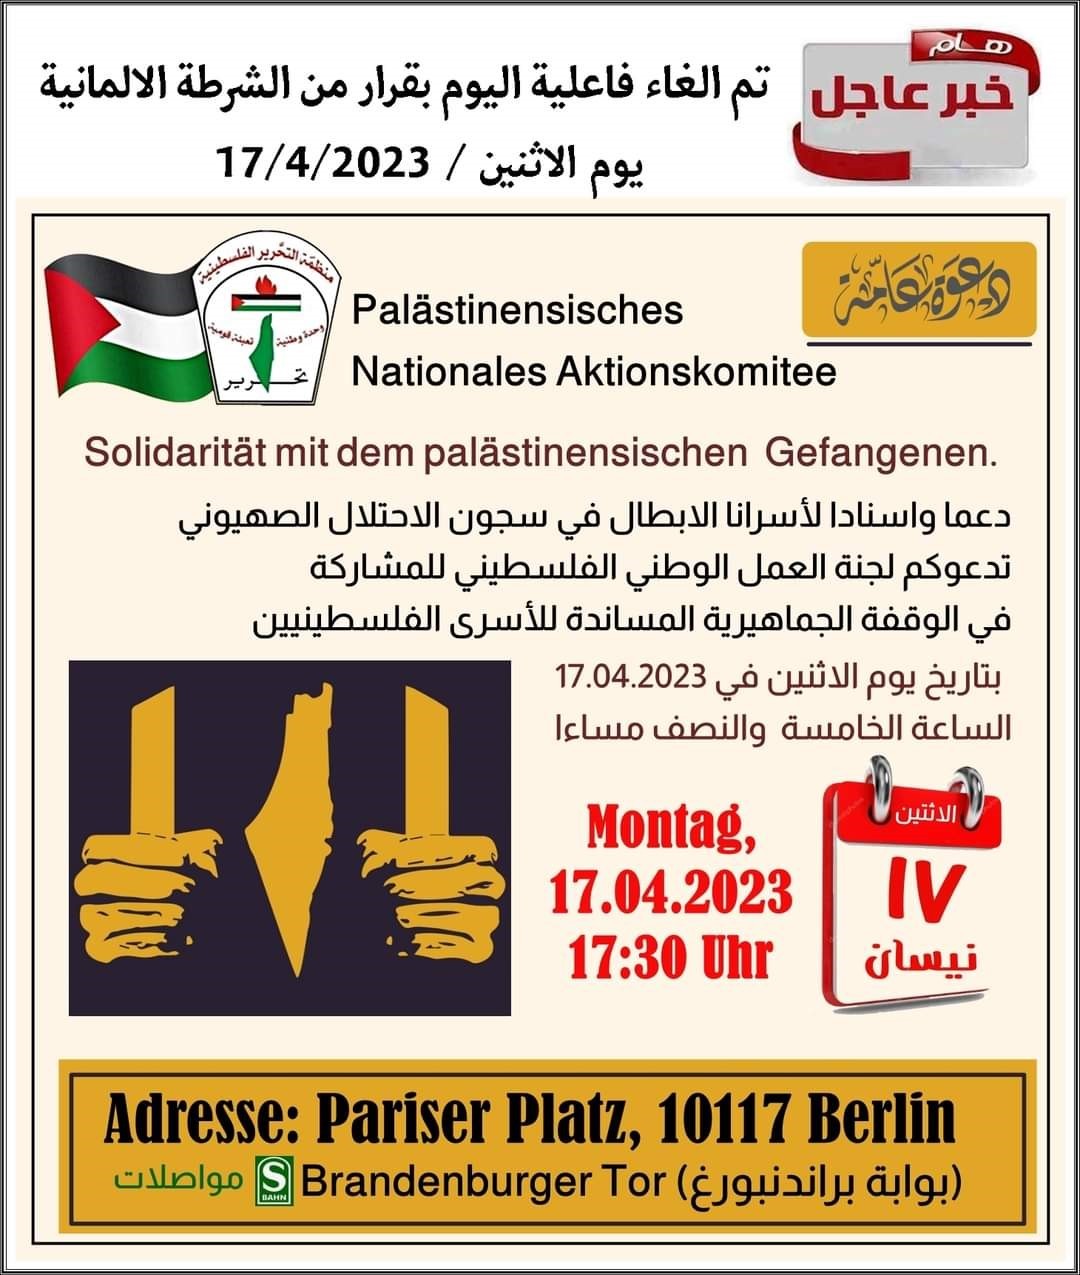 دعوة لفعالية في برلين 